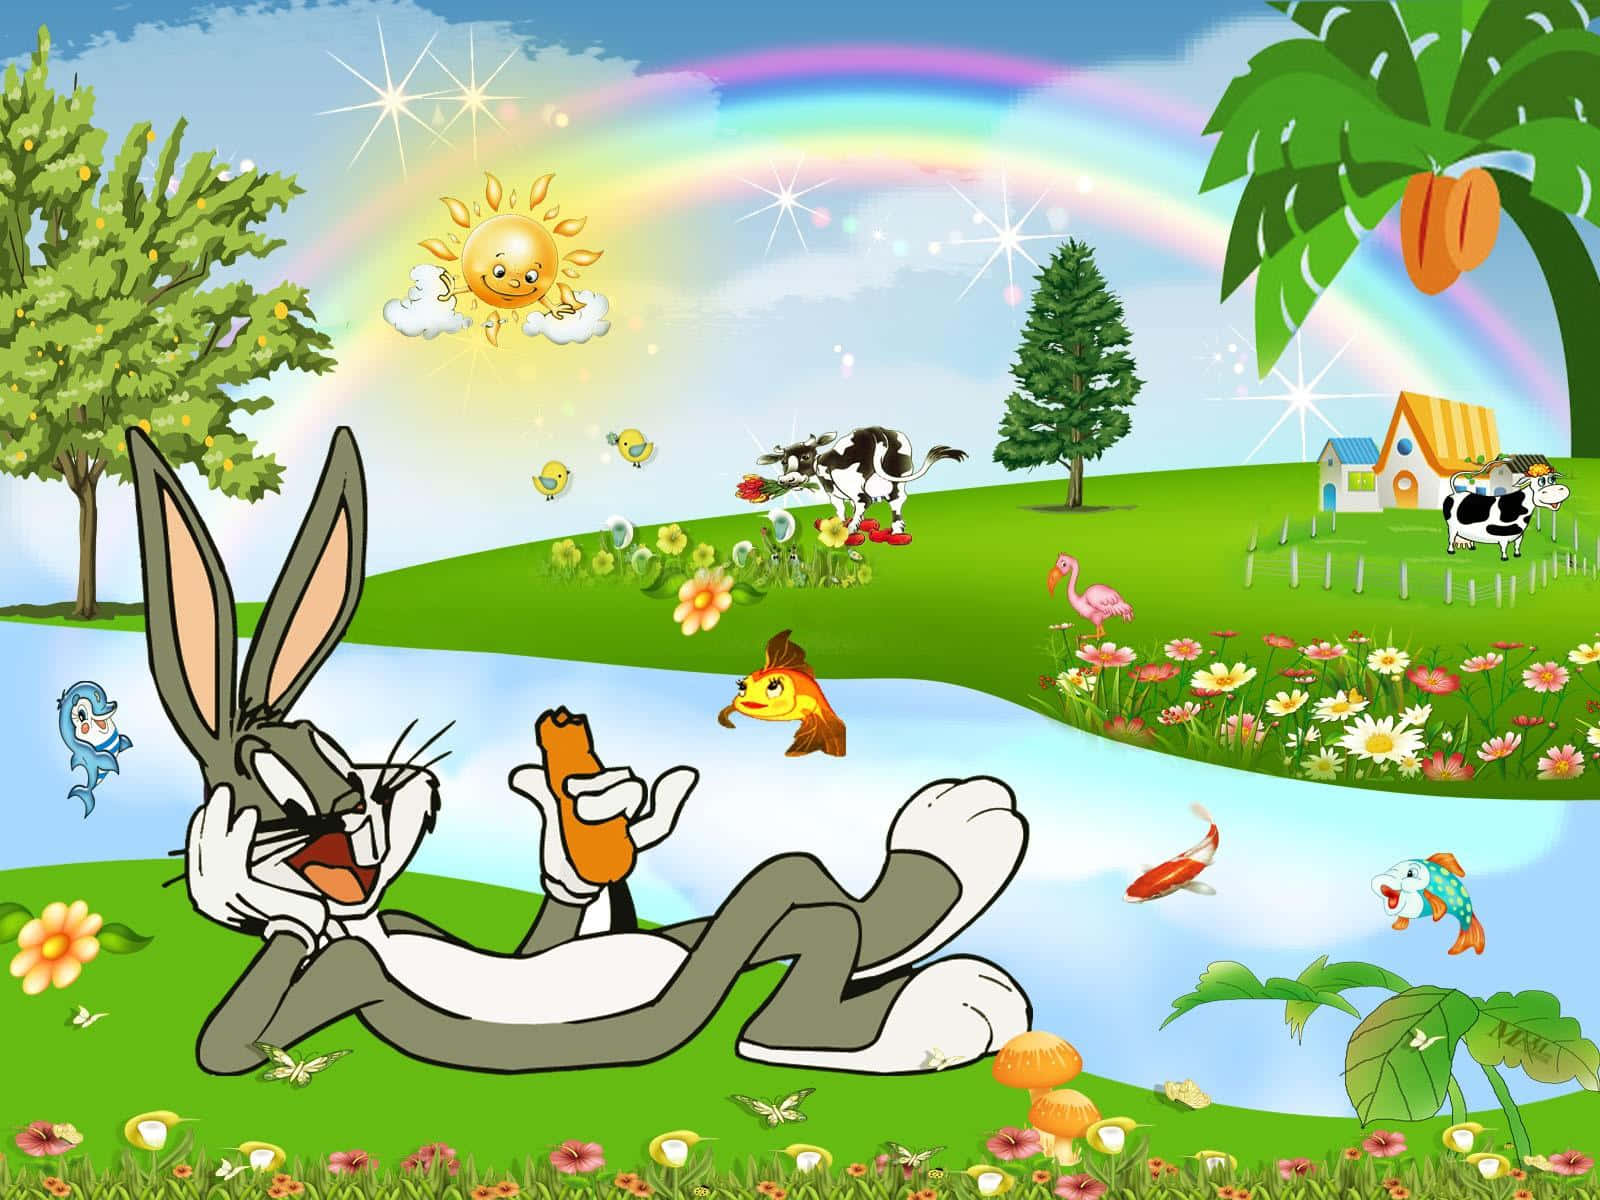 Förslagpå Bakgrundsbild Till Datorn Eller Mobilen: Coola Bugs Bunny Äter Morötter Med En Regnbåge. Wallpaper